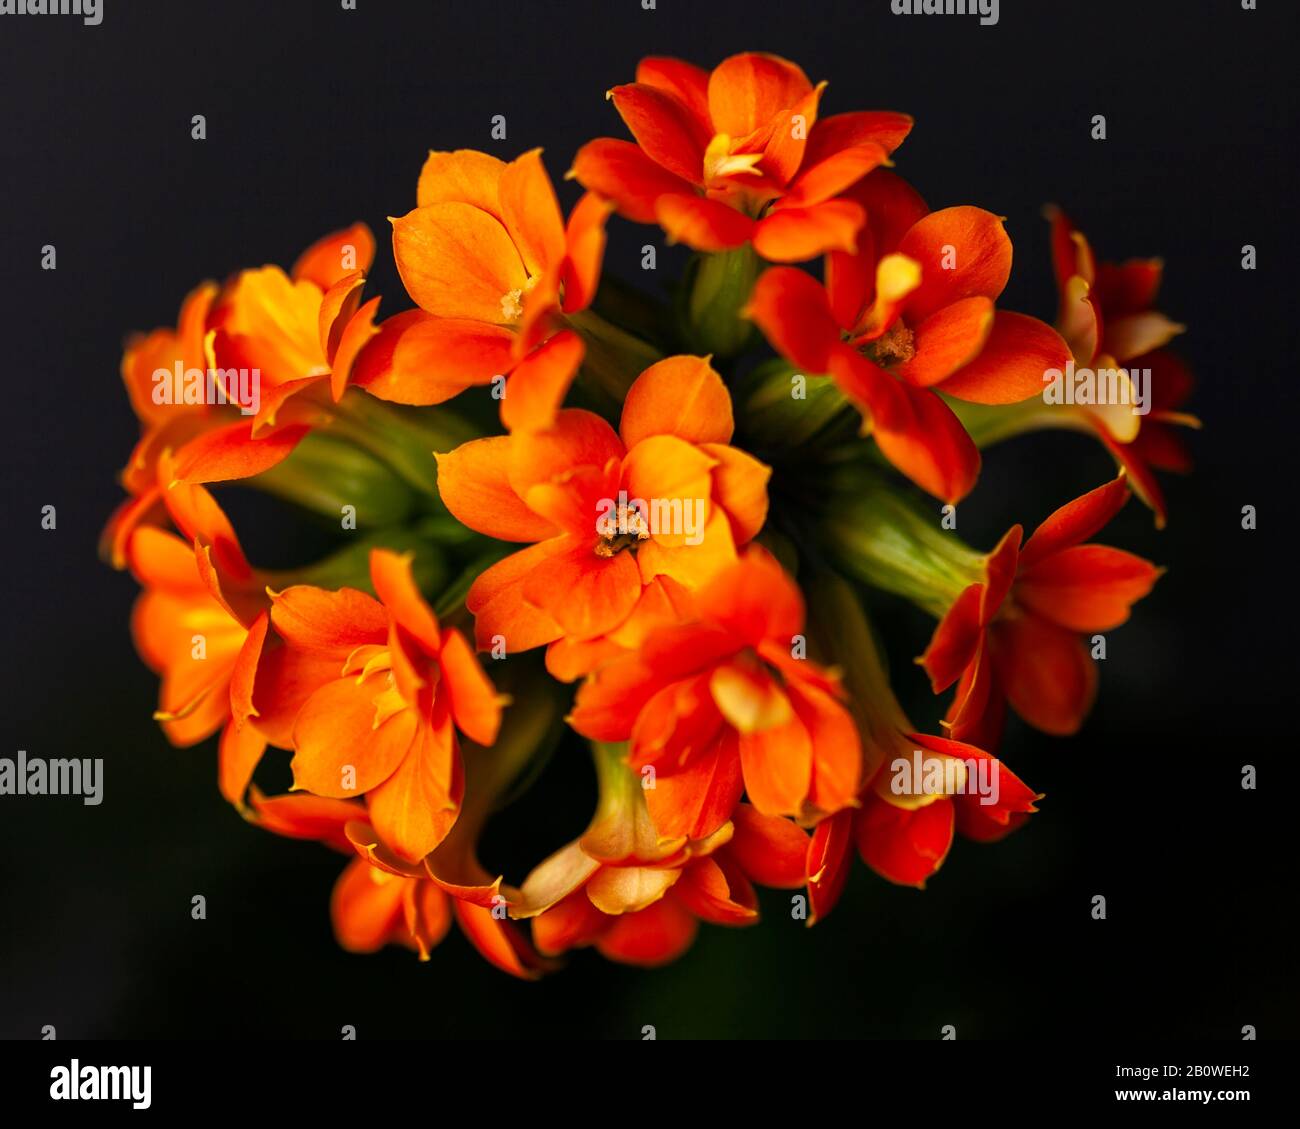 Flowers of decorative orange kalanchoe. Houseplants. Close-up. Dark background Stock Photo